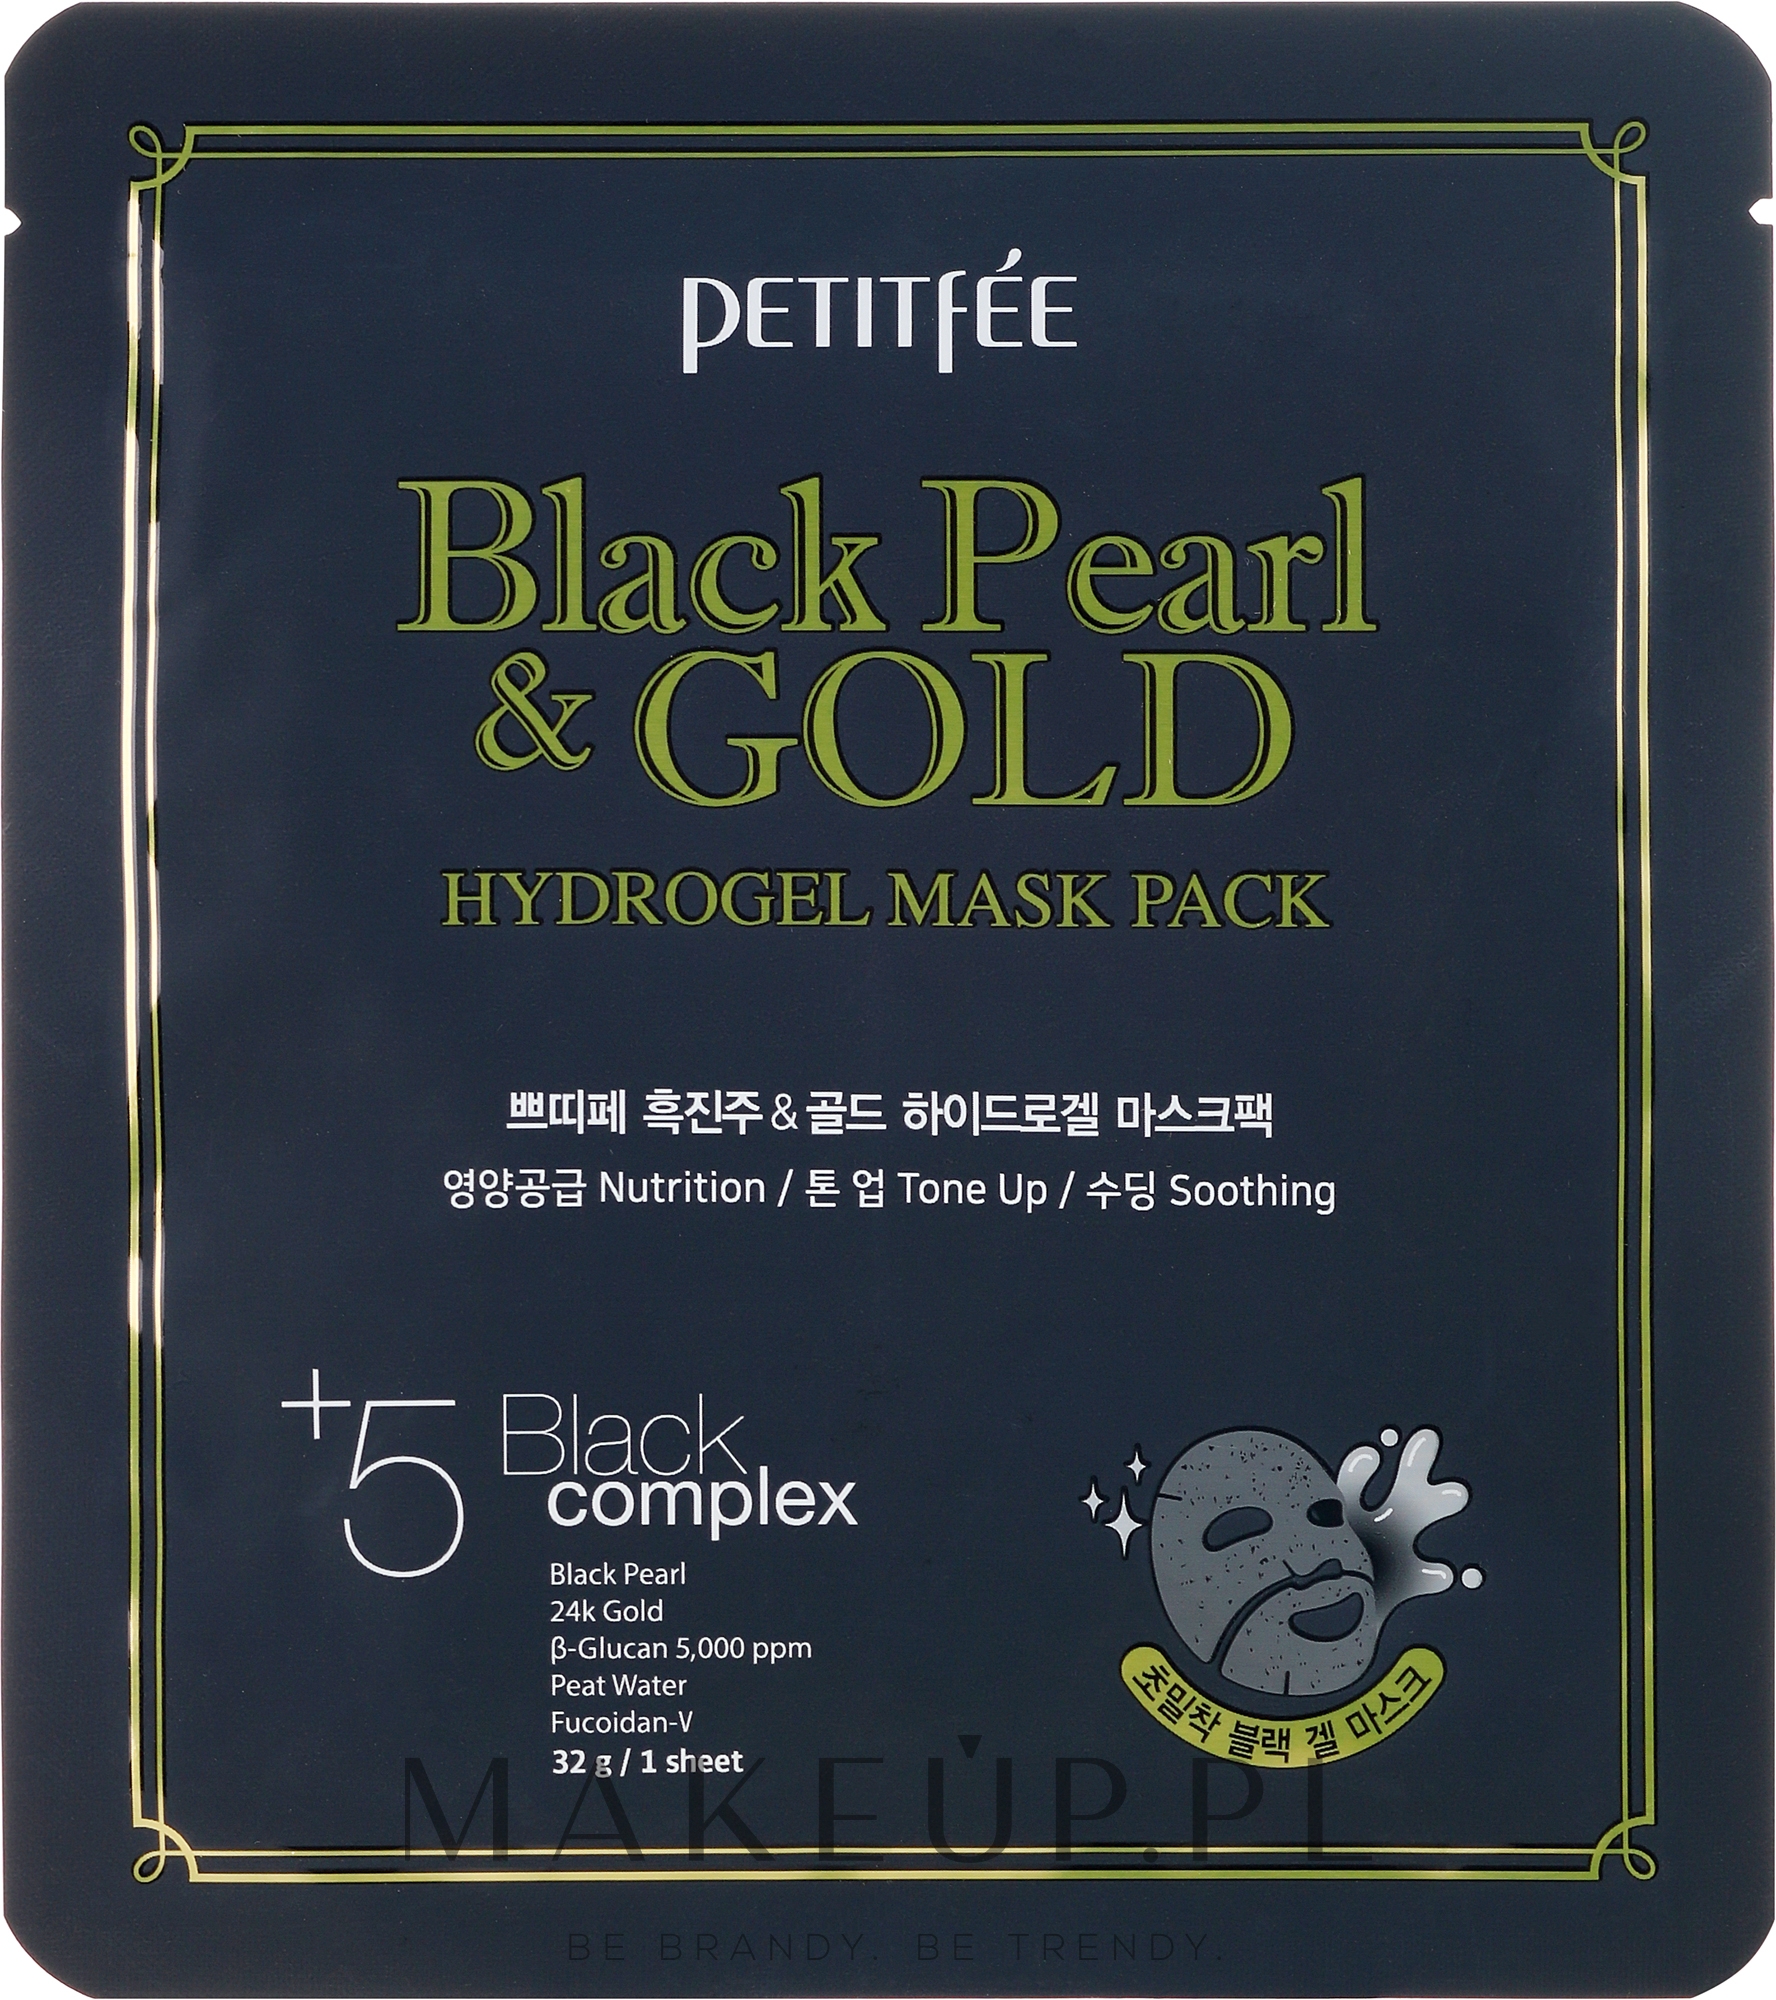 Hydrożelowa maska do twarzy ze złotem i czarną perłą - Petitfée & Koelf Black Pearl & Gold Hydrogel Mask Pack — Zdjęcie 1 szt.